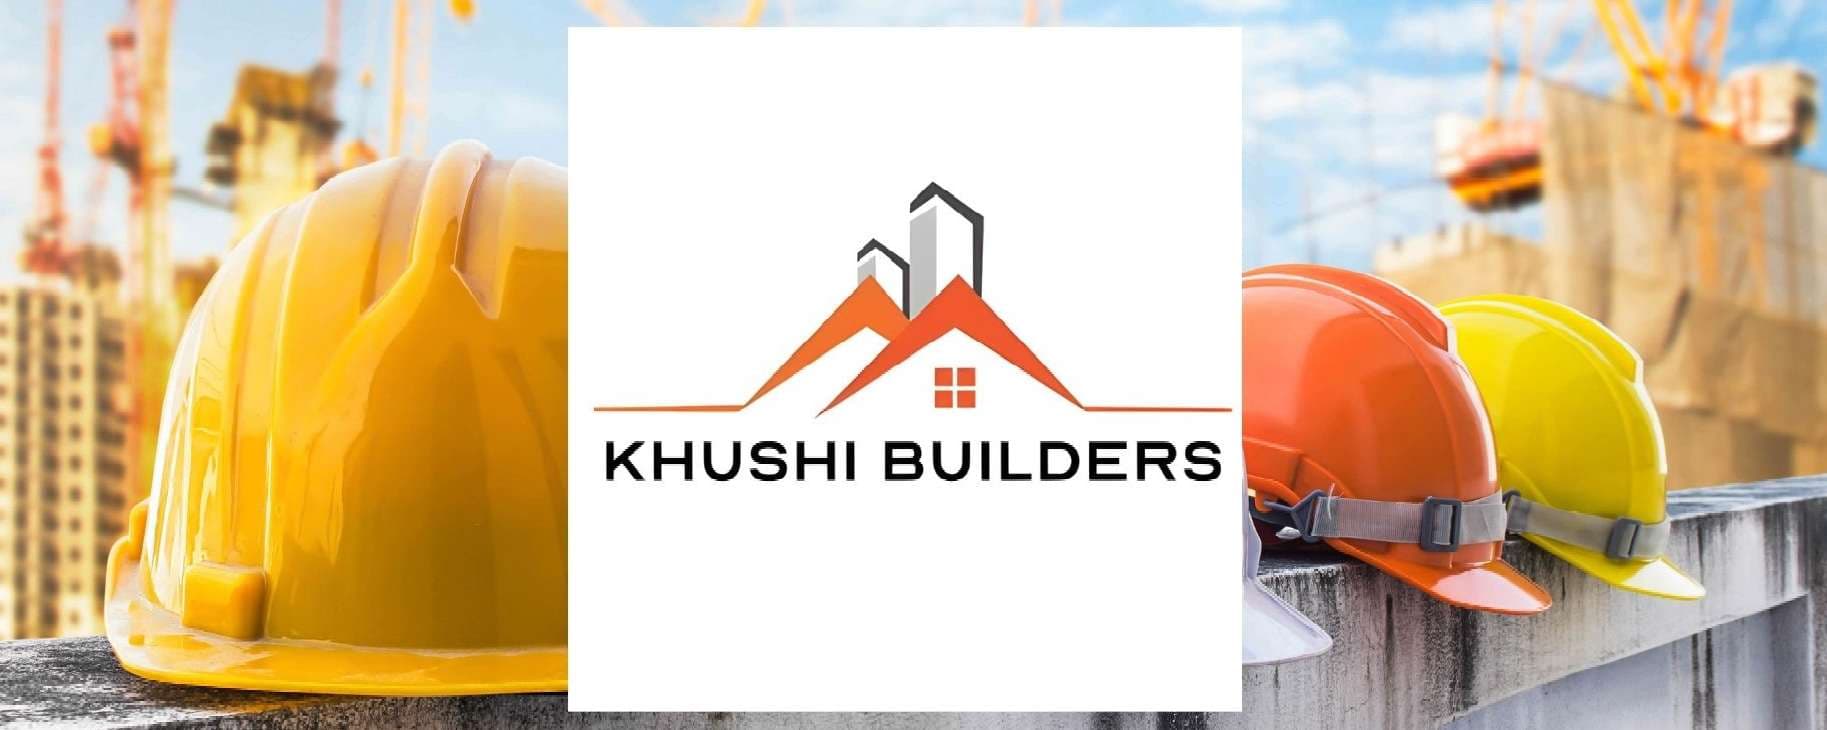 Khushi Builders